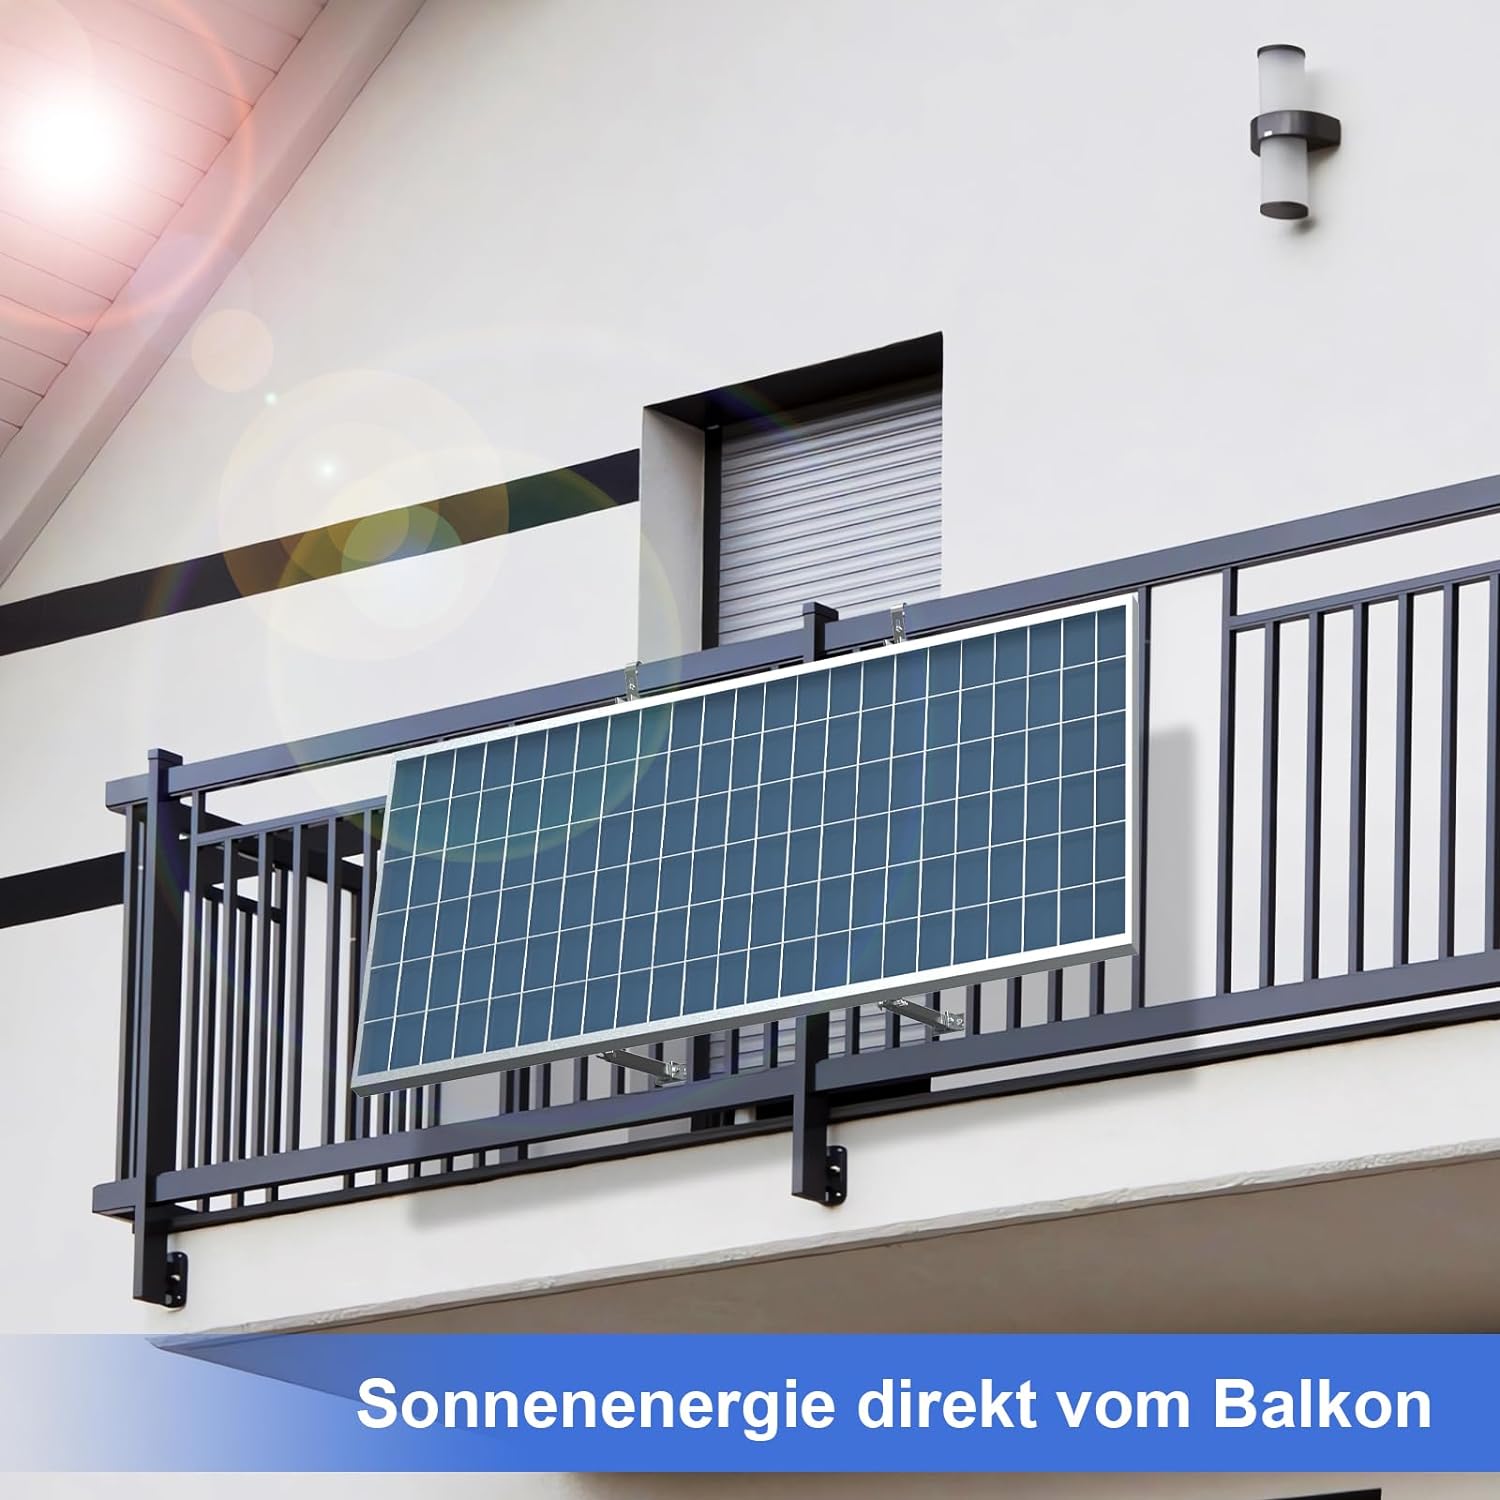 Balkonkraftwerk Halterung mit Haken - 0° 25-40° Verstellbare Befestigung für Solarpanel - Solarmodul Aufständerung für Balkonkraftwerk - PV Solar Modul Alu Halterungen